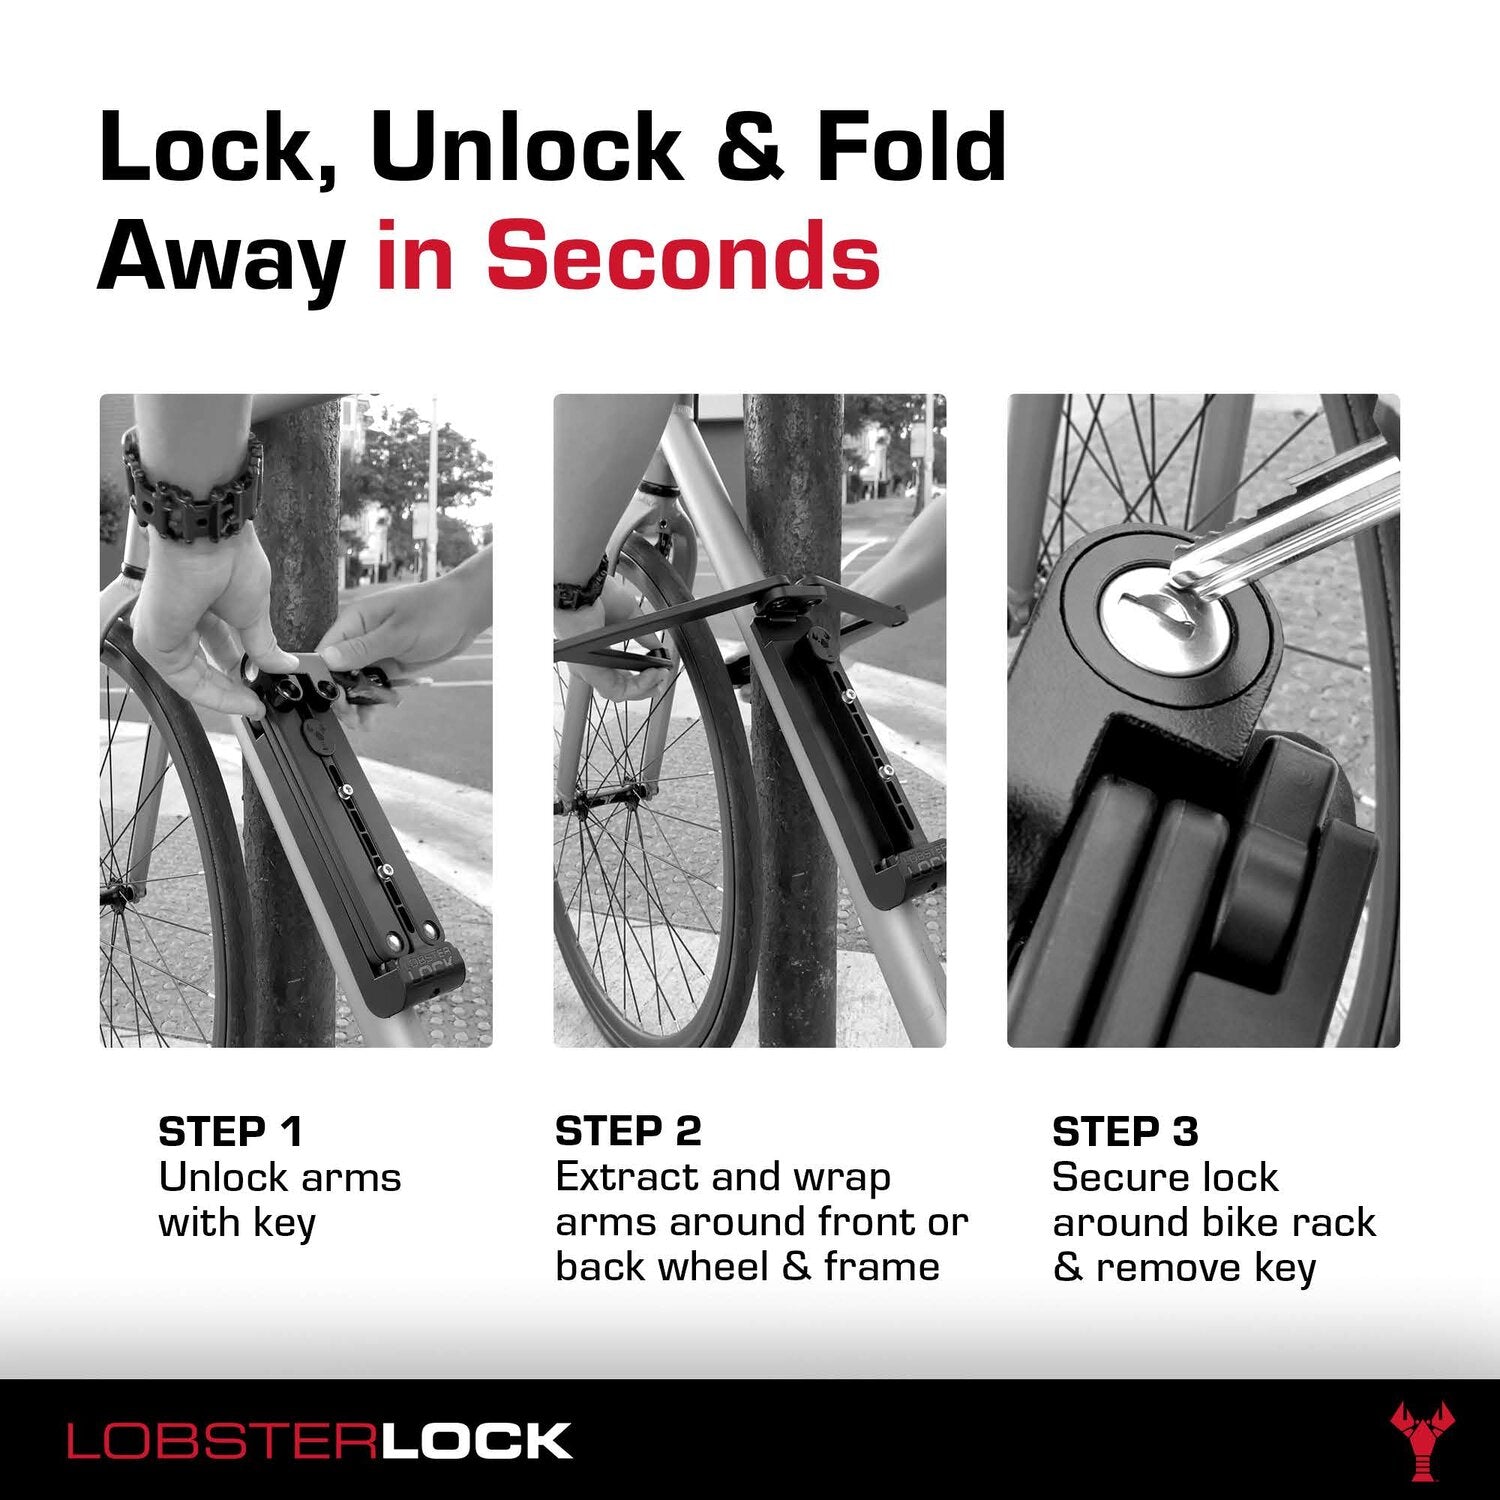 Lobster Lock 2.0 – thelobsterlock